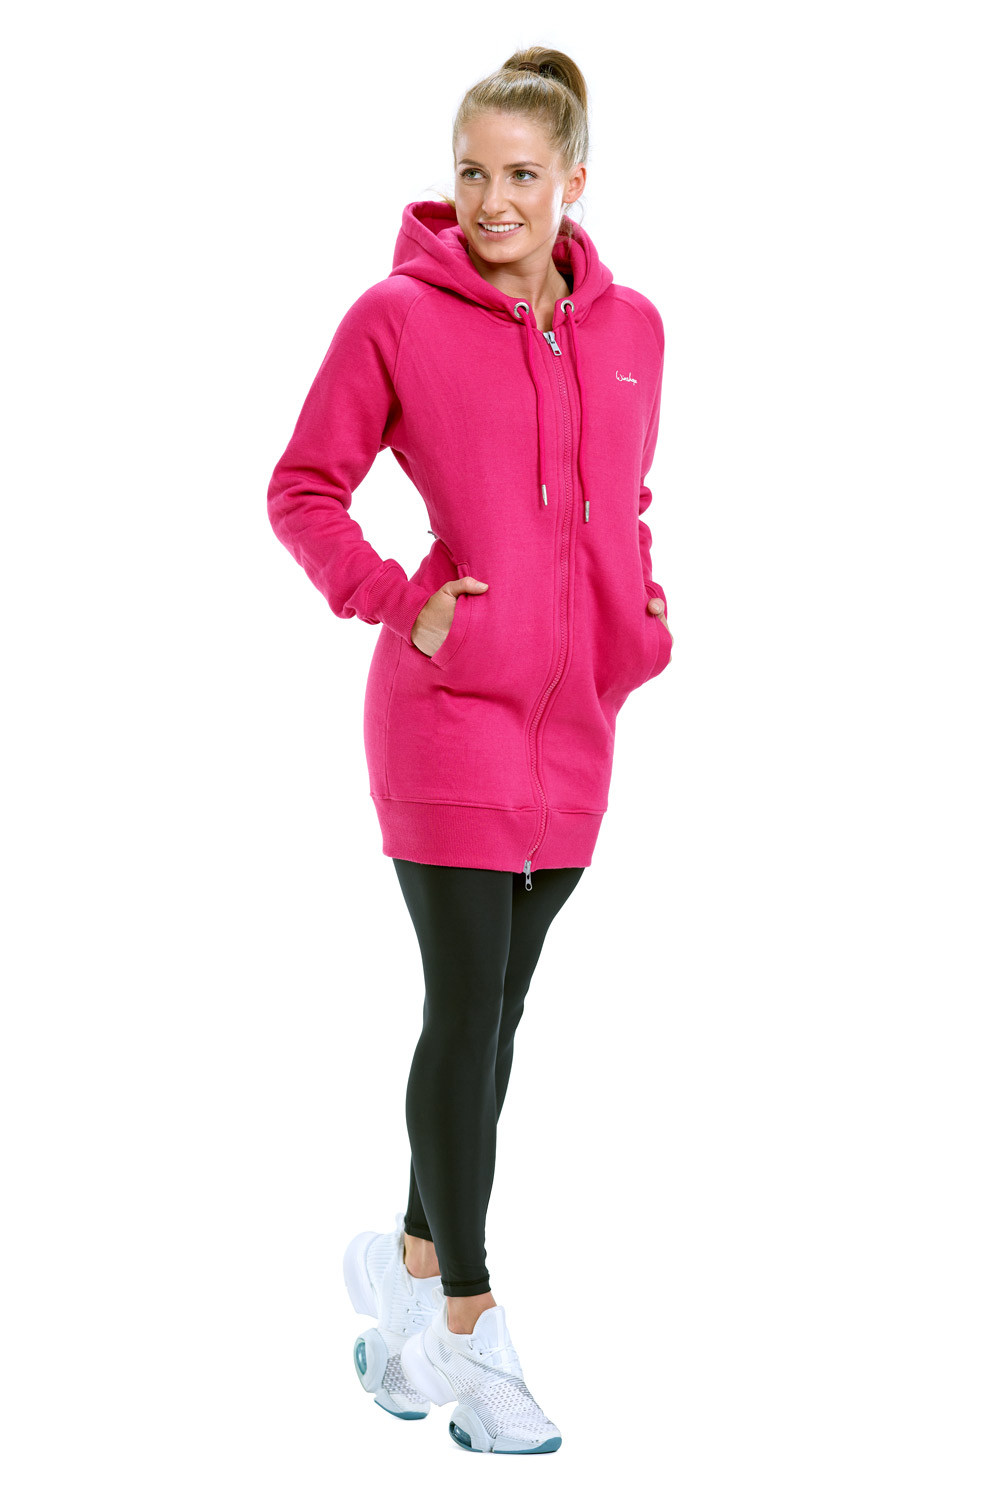 Lange, kuschelige Hoodie-Jacke J006 Style pink, mit Street deep Winshape 2-Wege-Zipper